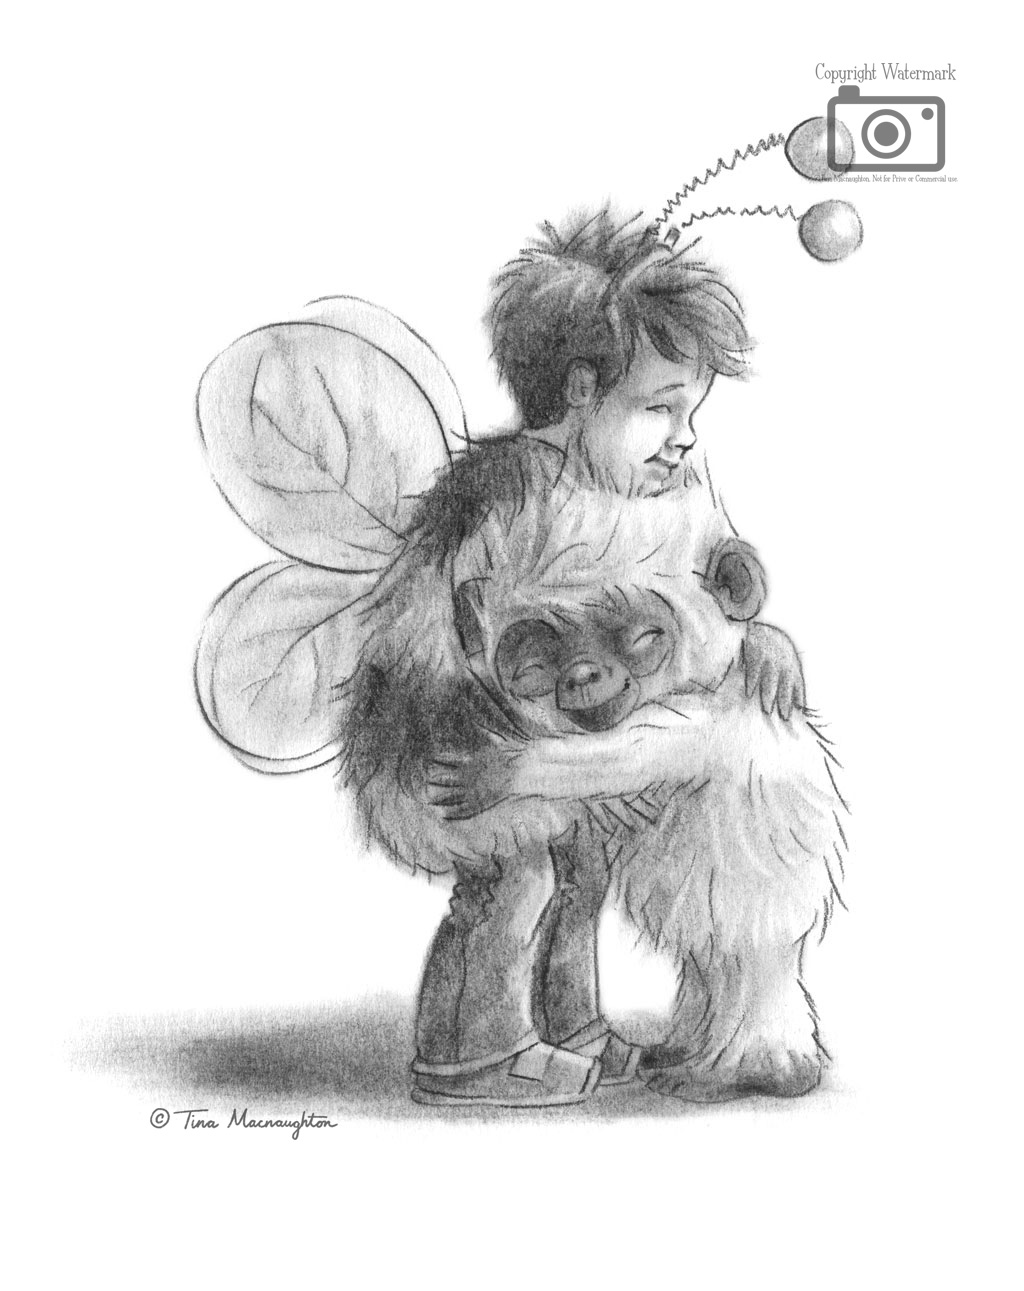 Snowball the Baby Bigfoot illustrated by Tina Macnaughton